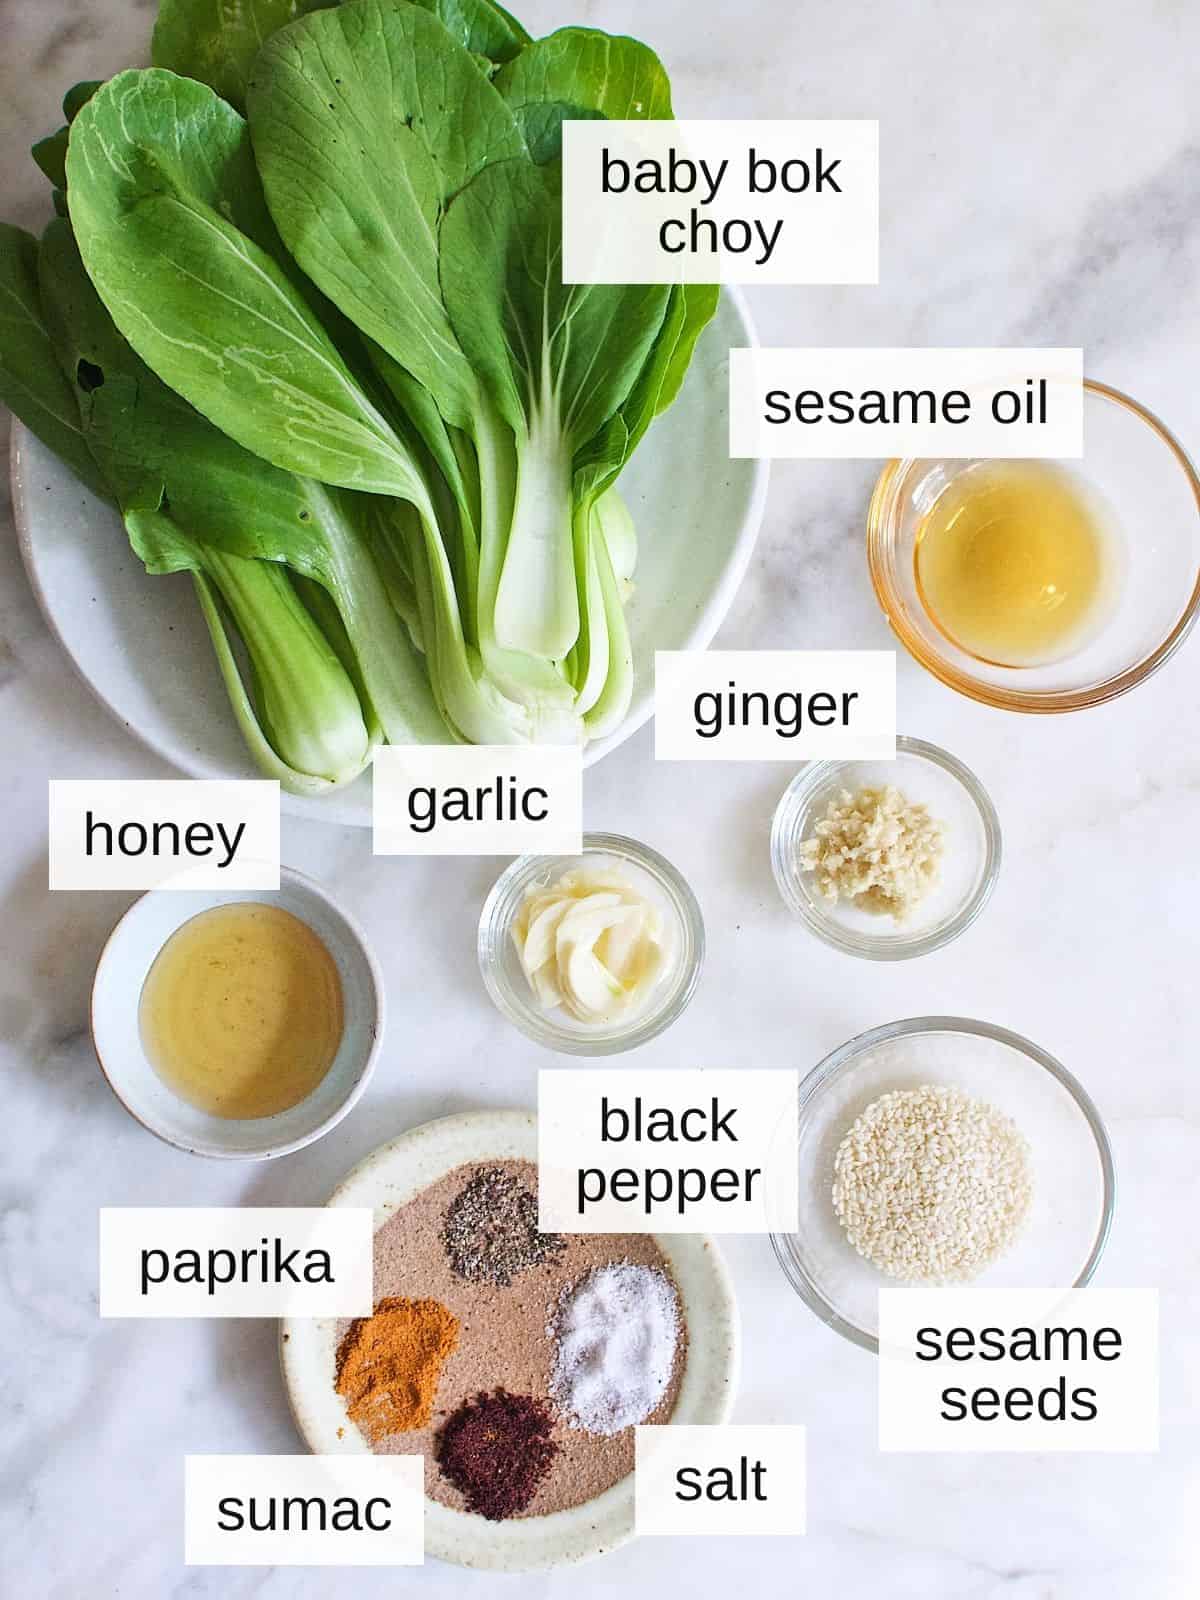 ingredients for garlic ginger bok choy recipe, including honey, pepper, sesame seeds, paprika, sumac, salt, garlic, sesame oil, ginger, and bok choy.